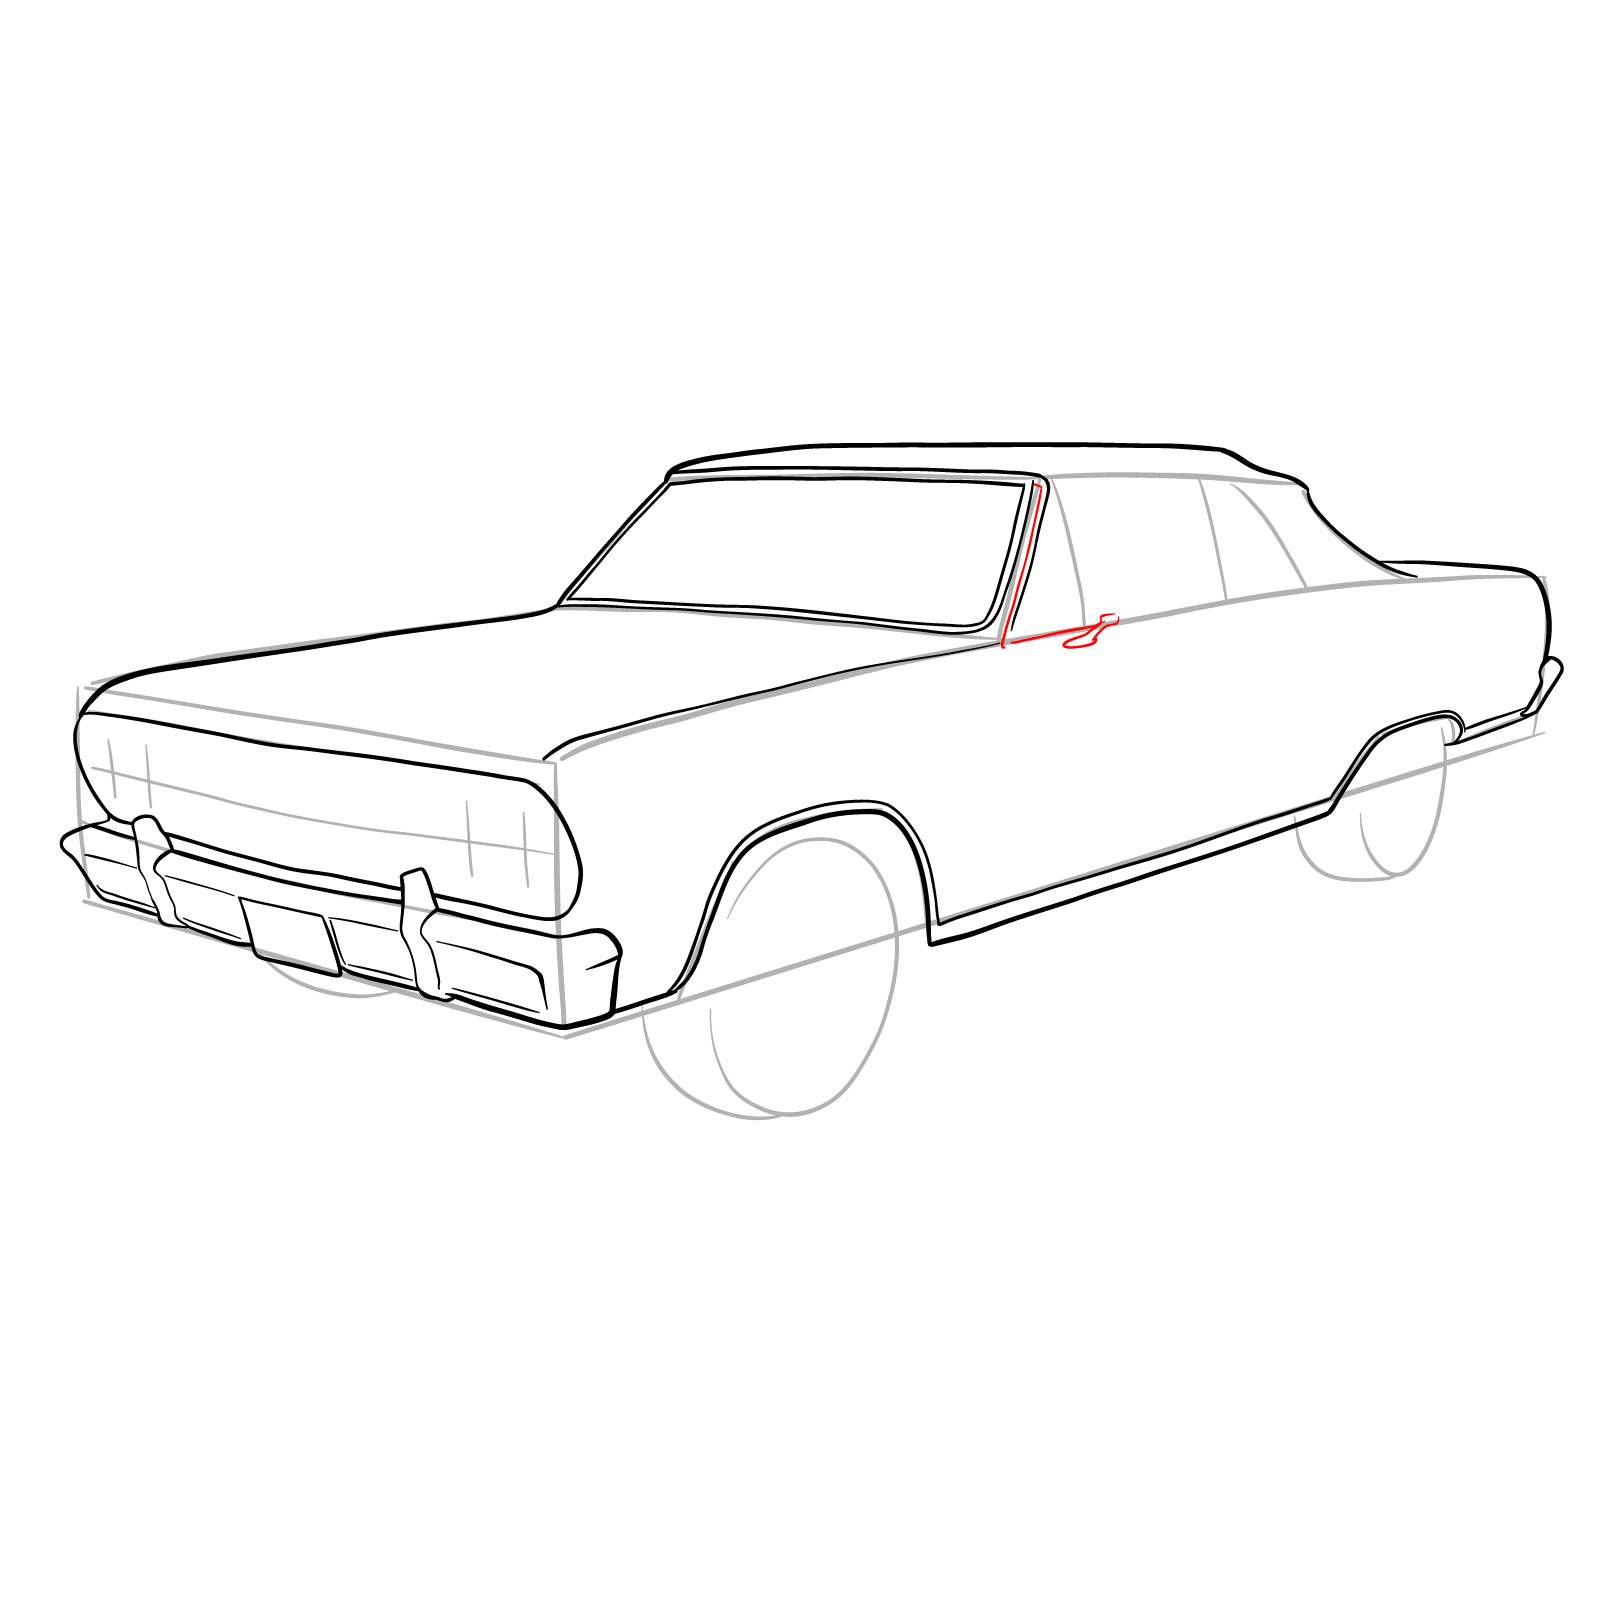 How to draw 1964 Chevrolet Malibu - step 19